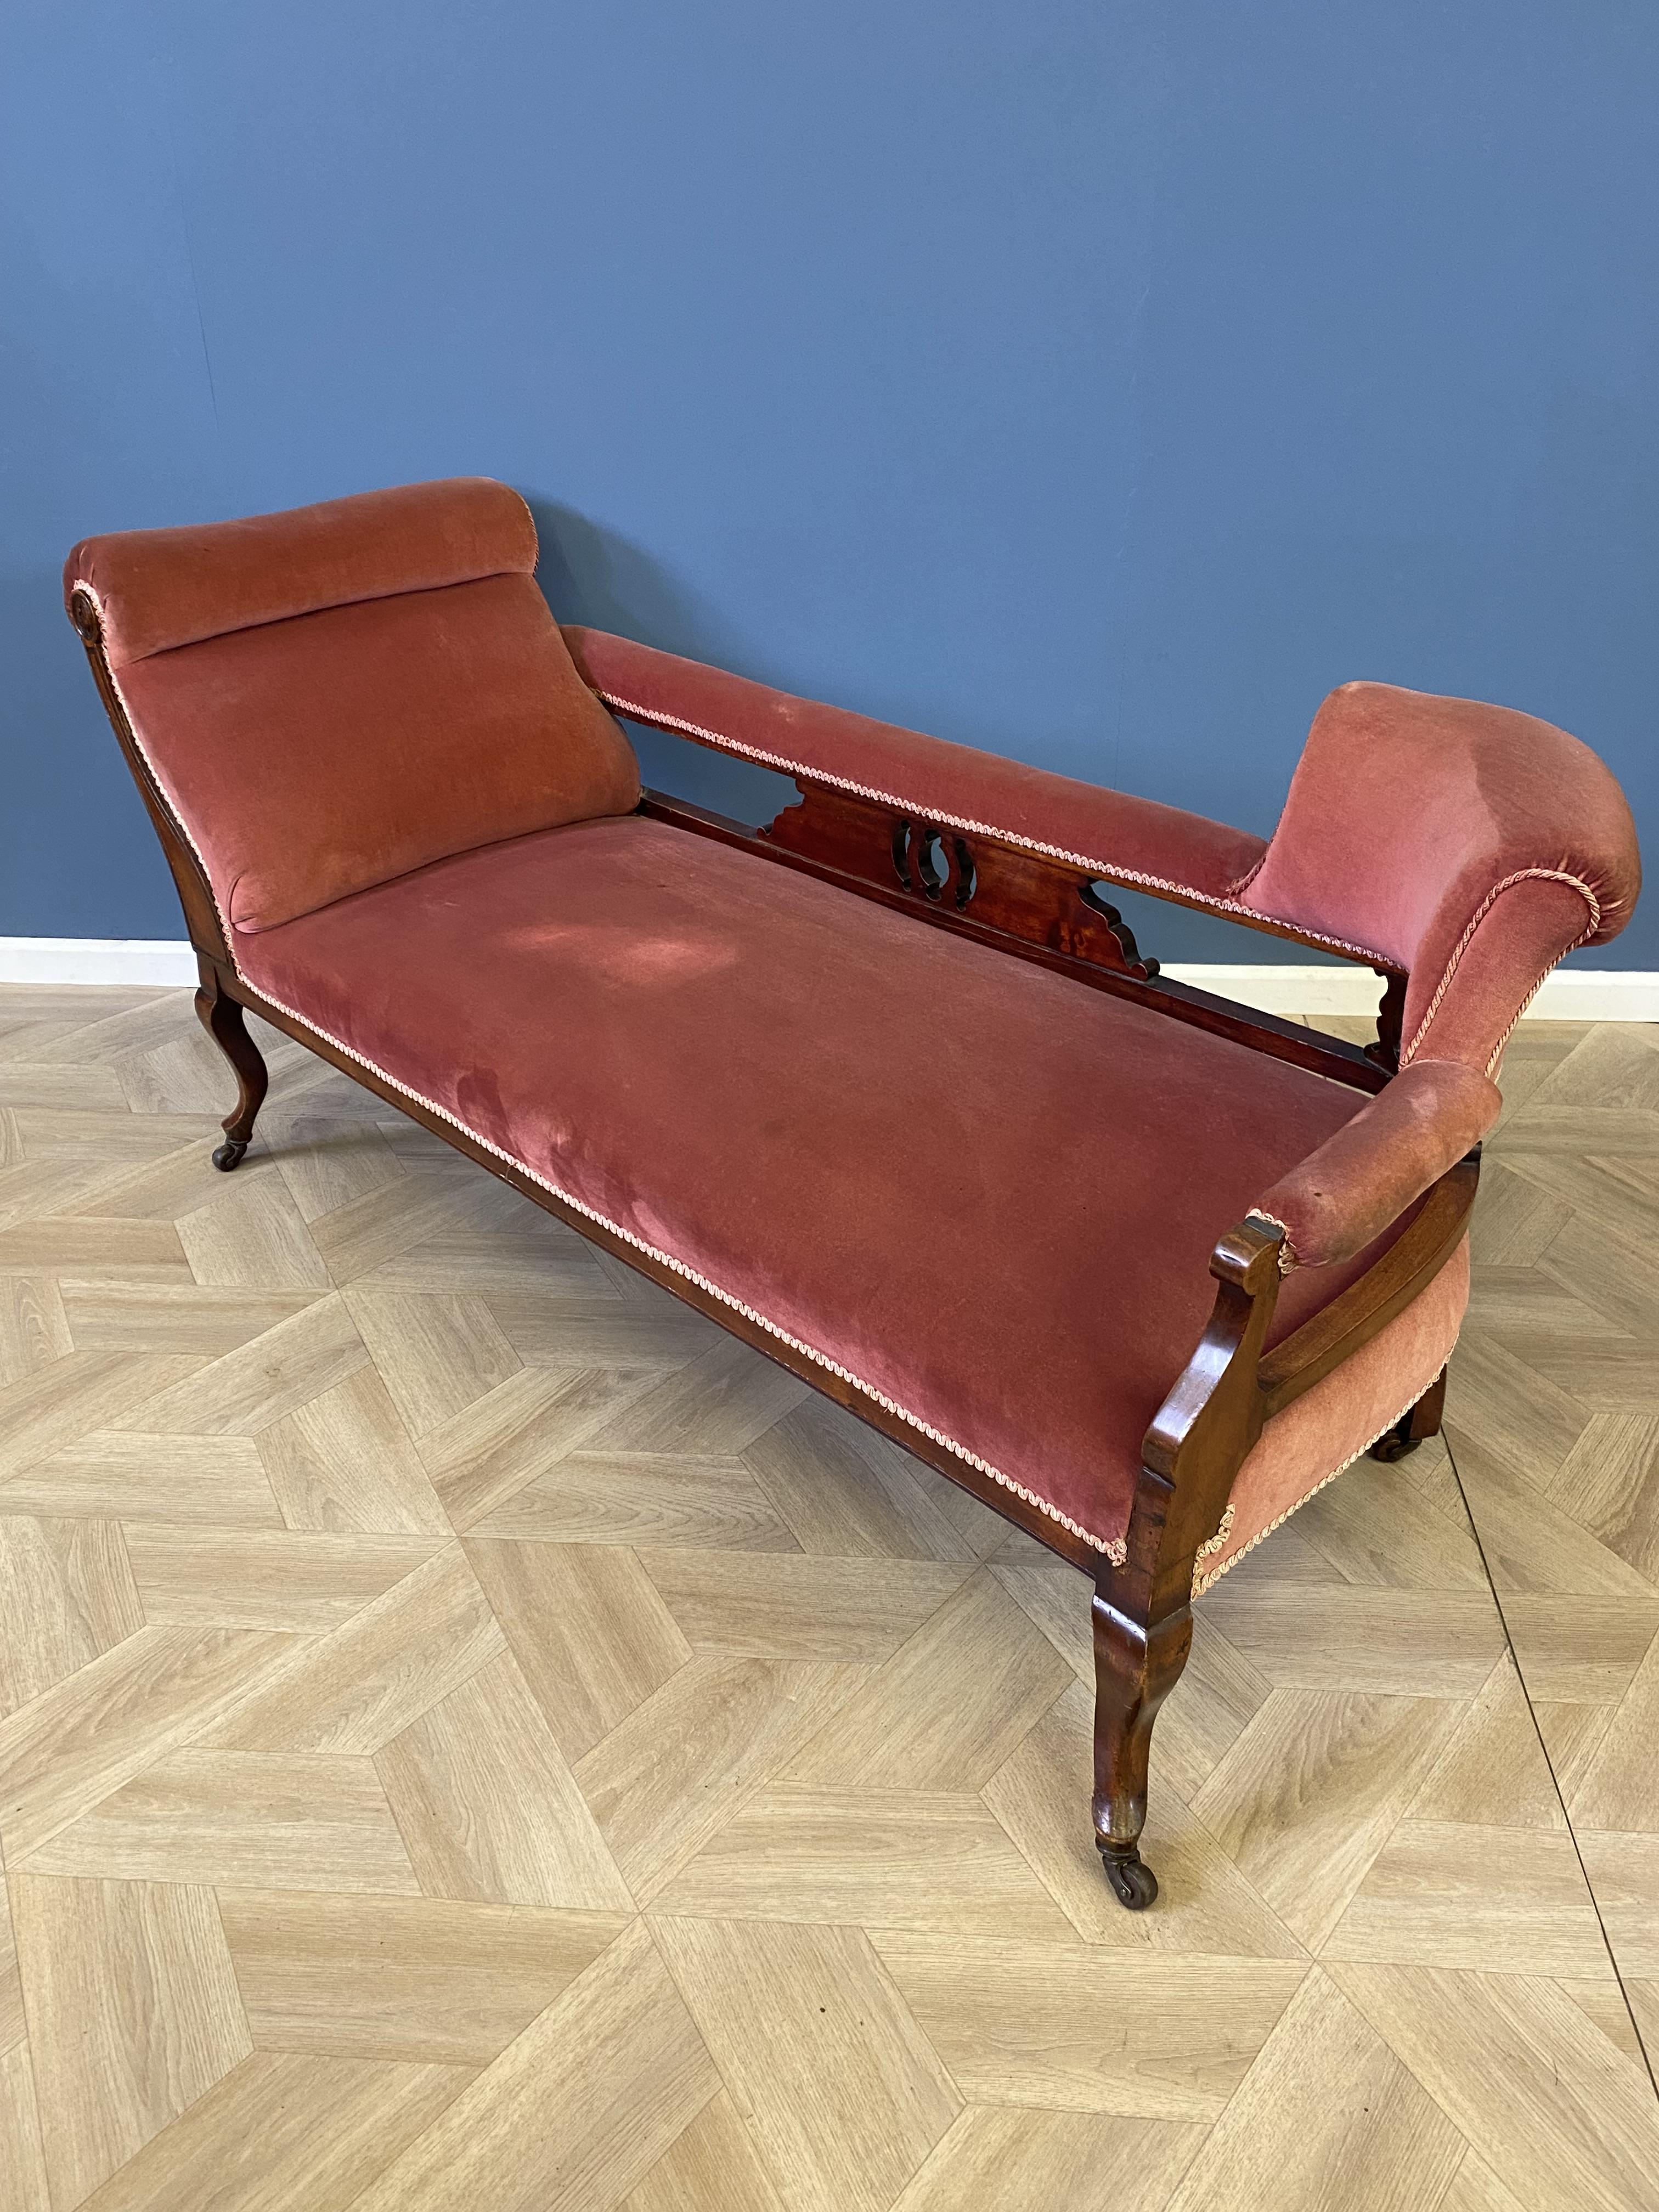 Edwardian mahogany chaise longue - Image 2 of 6